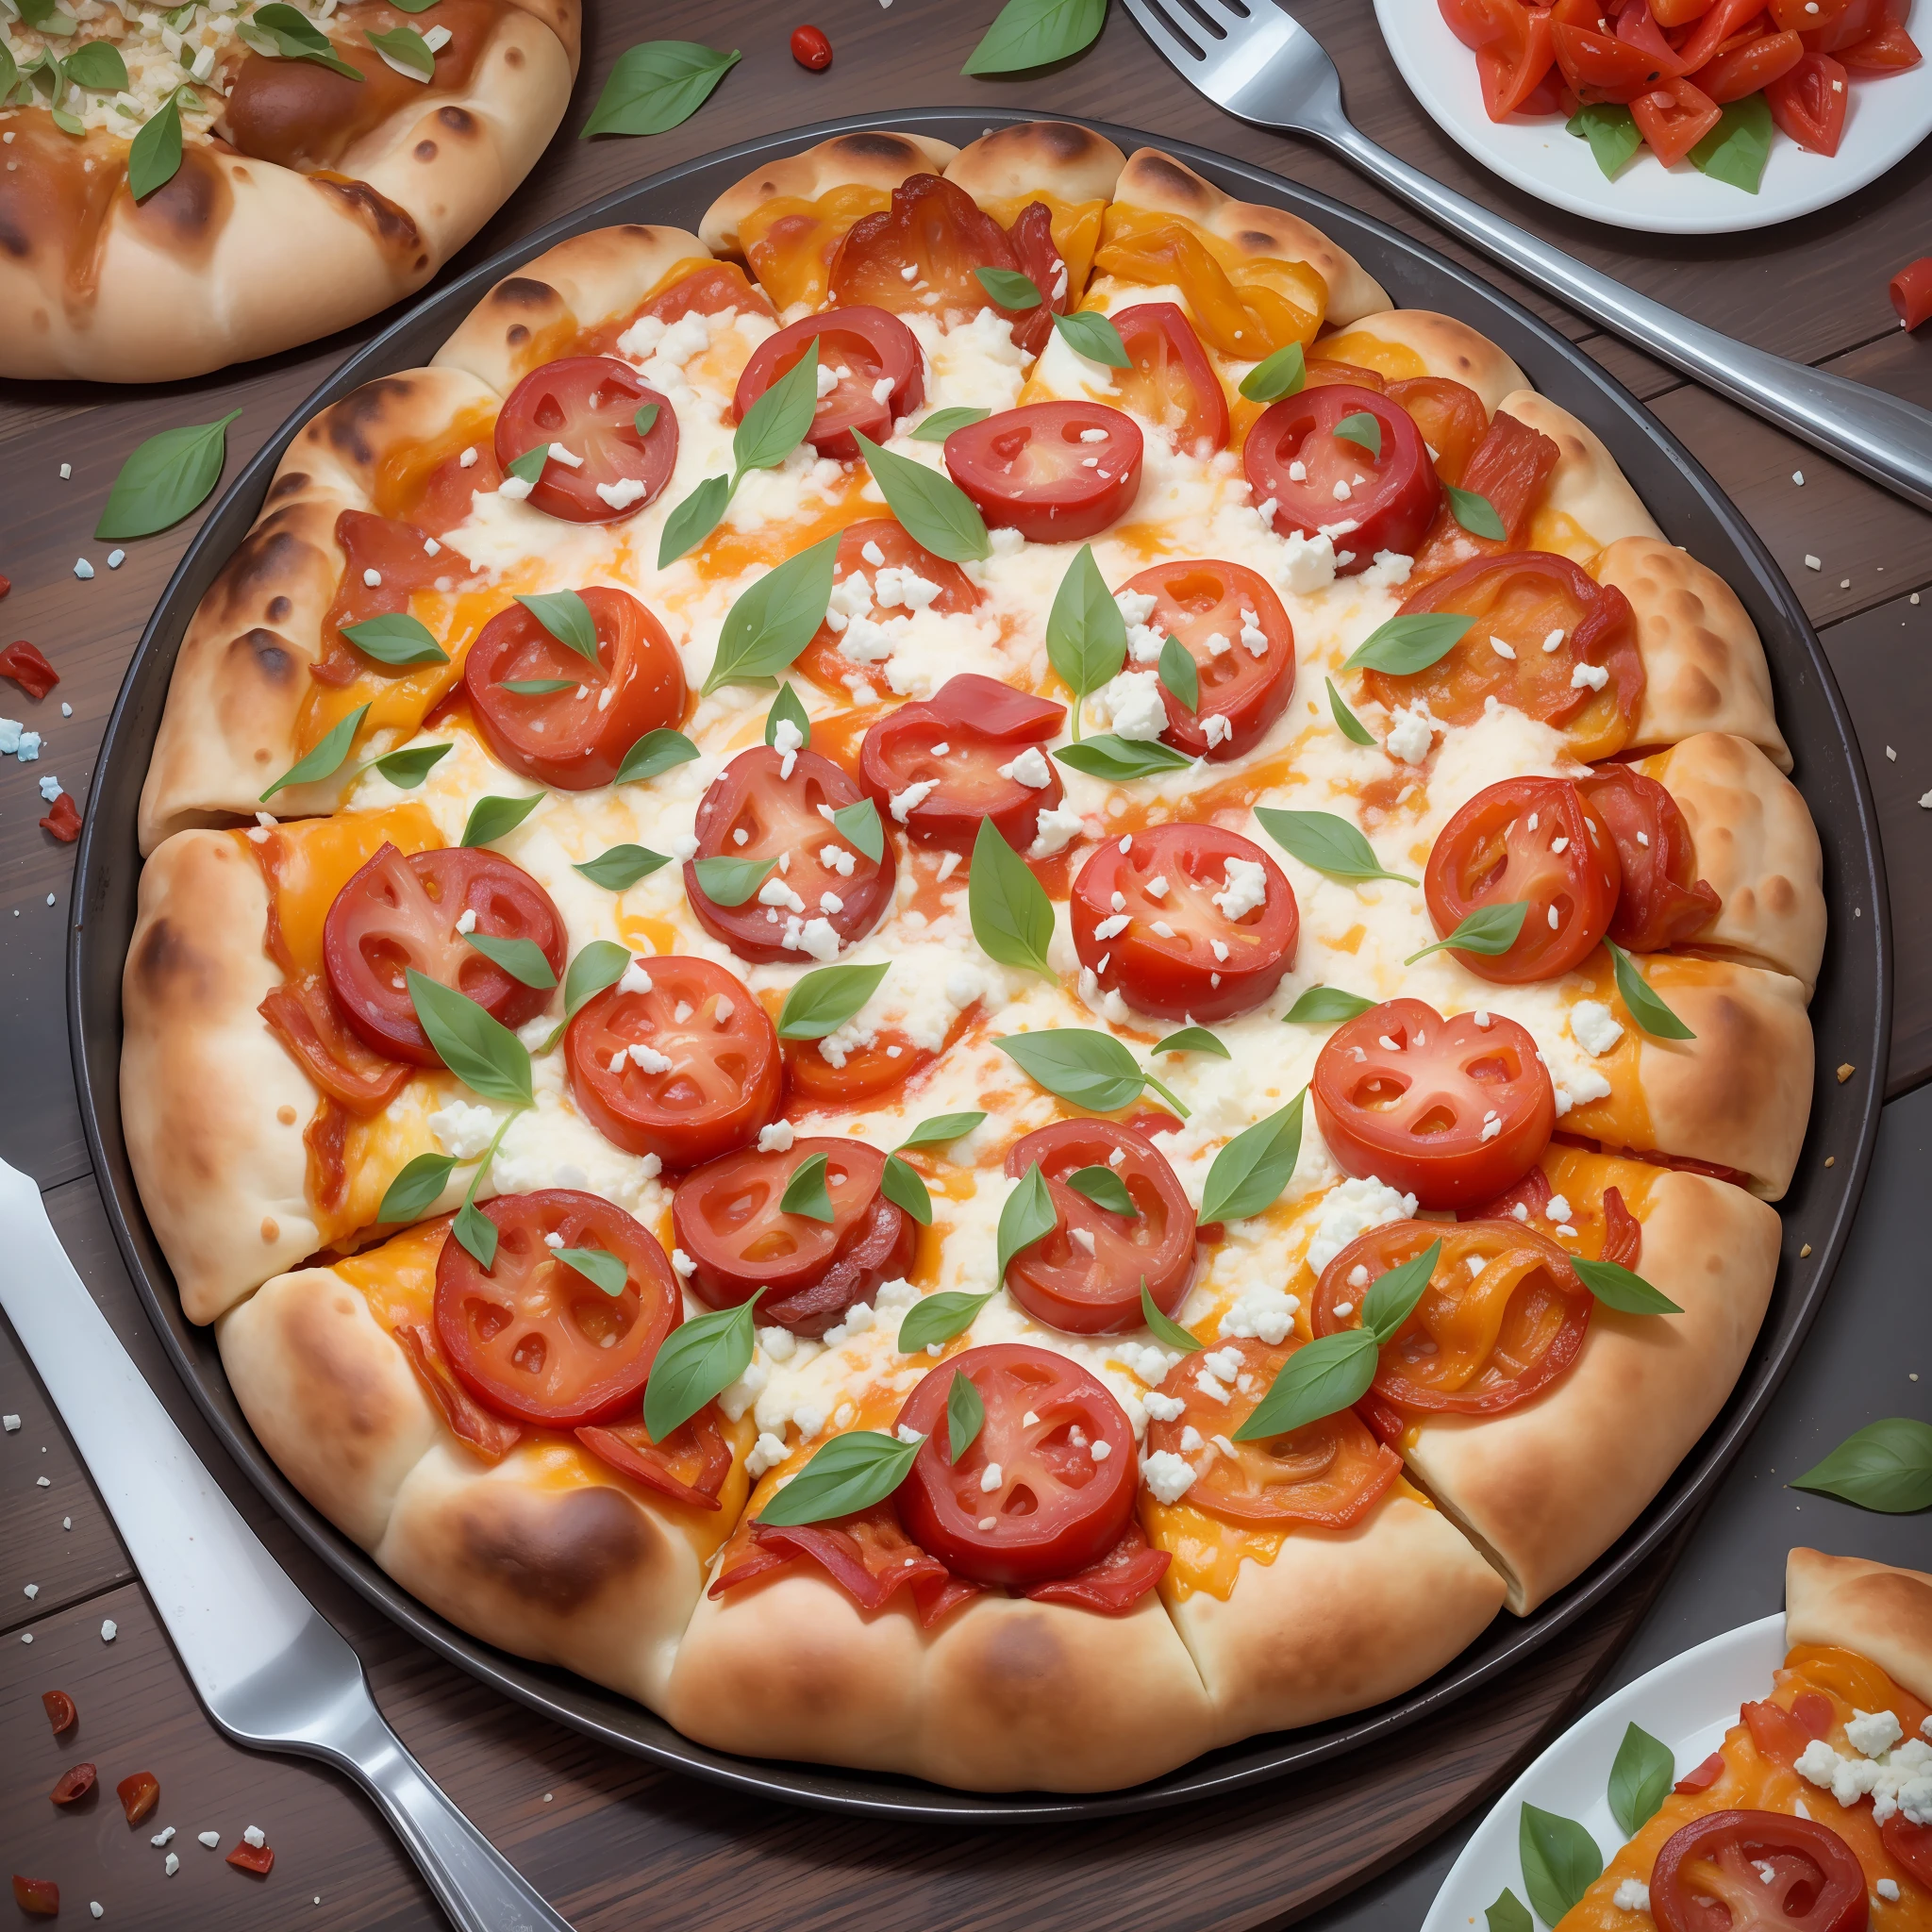 # بيتزا كبيرة وملونة, وضعت على خلفية بومبي القديمة. تعمل عجينة البيتزا كلوحة نابضة بالحياة لمجموعة متنوعة من الإضافات اللذيذة. أولاً, لدينا ذهبية, طبقة من جبنة الموزاريلا. التالي, هناك الأحمر, شرائح الطماطم اللذيذة متناثرة مع القليل من أوراق الريحان الخضراء الطازجة التي تطل من خلالها. هناك كميات سخية من البصل المكرمل, الفطر, والفلفل الحلو بألوان حمراء, أصفر, والأخضر.استمرار موكب النكهات هي لذيذة, شرائح رقيقة من لحم الخنزير, بيبروني, ولحم الخنزير المقدد المقرمش, تليها رش الجبن الأزرق المفتت, توابل جديدة, ورقائق الفلفل الأحمر الحار لركلة إضافية. على الجانب, هناك شرائح زيتون أسود وقلوب خرشوف متبلة.　المشهد بأكمله يجلس على قشرة مخبوزة بشكل مثالي, متفحمة قليلا على الحواف. الدفء, يضيء التوهج الجذاب من الفرن الذي يعمل بالحطب المشهد. في الخلفية, أنقاض بومبي تقف صامتة, جبل. فيزوف يلوح في الأفق كبيرة, مع سماء مضاءة بلطف بغروب الشمس.